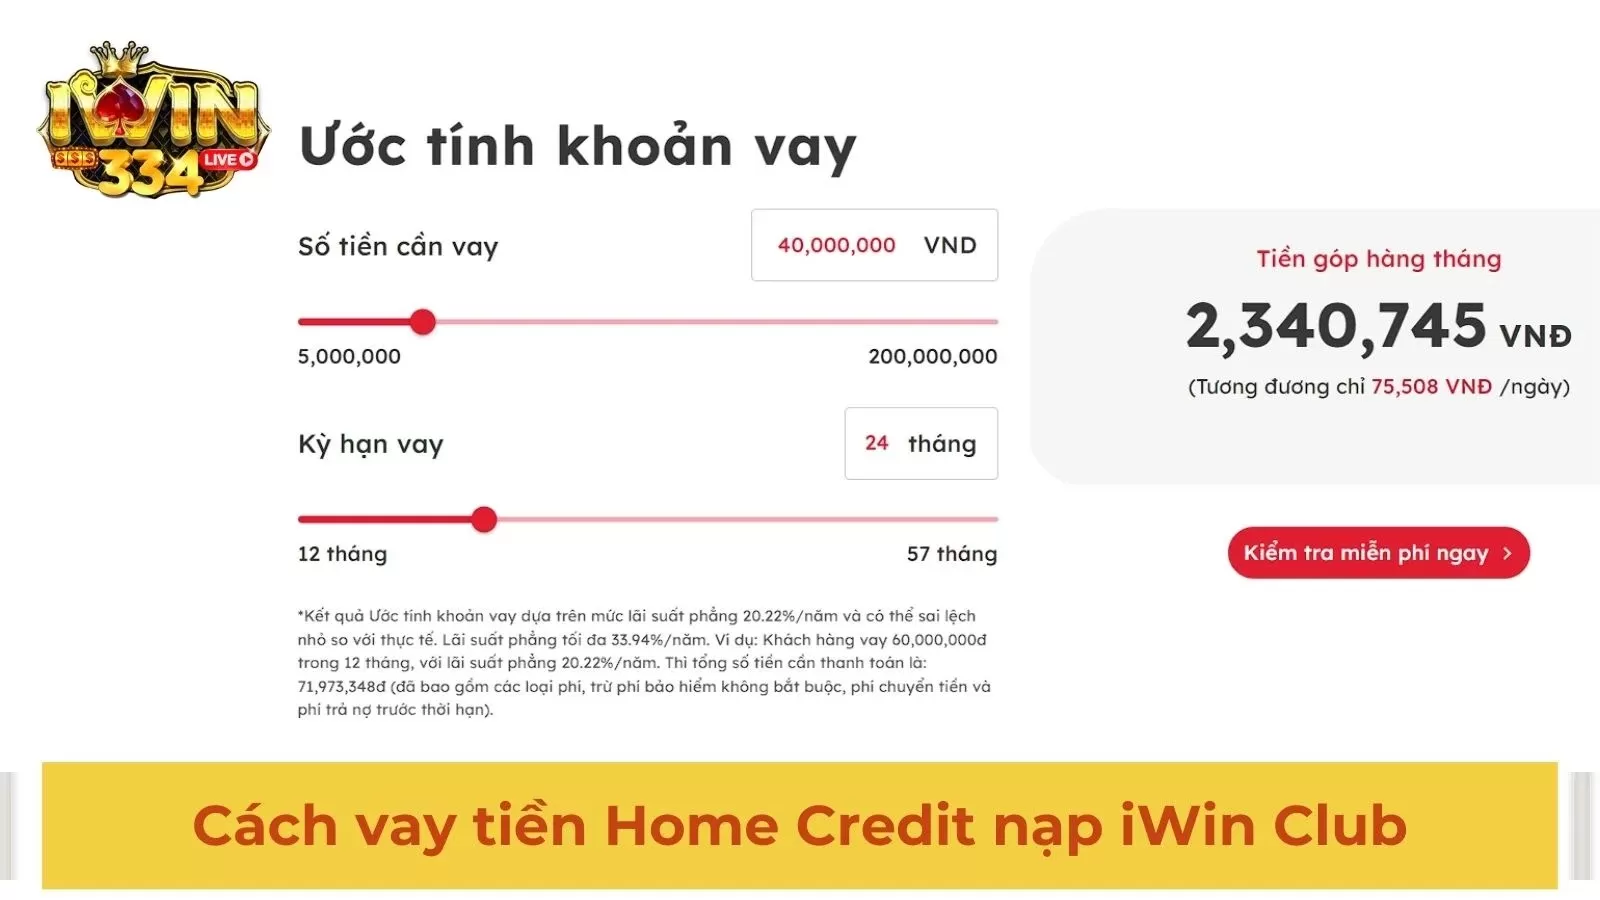 Hướng dẫn cách vay tiền Home Credit chơi iWin duyệt bao thành công 100%